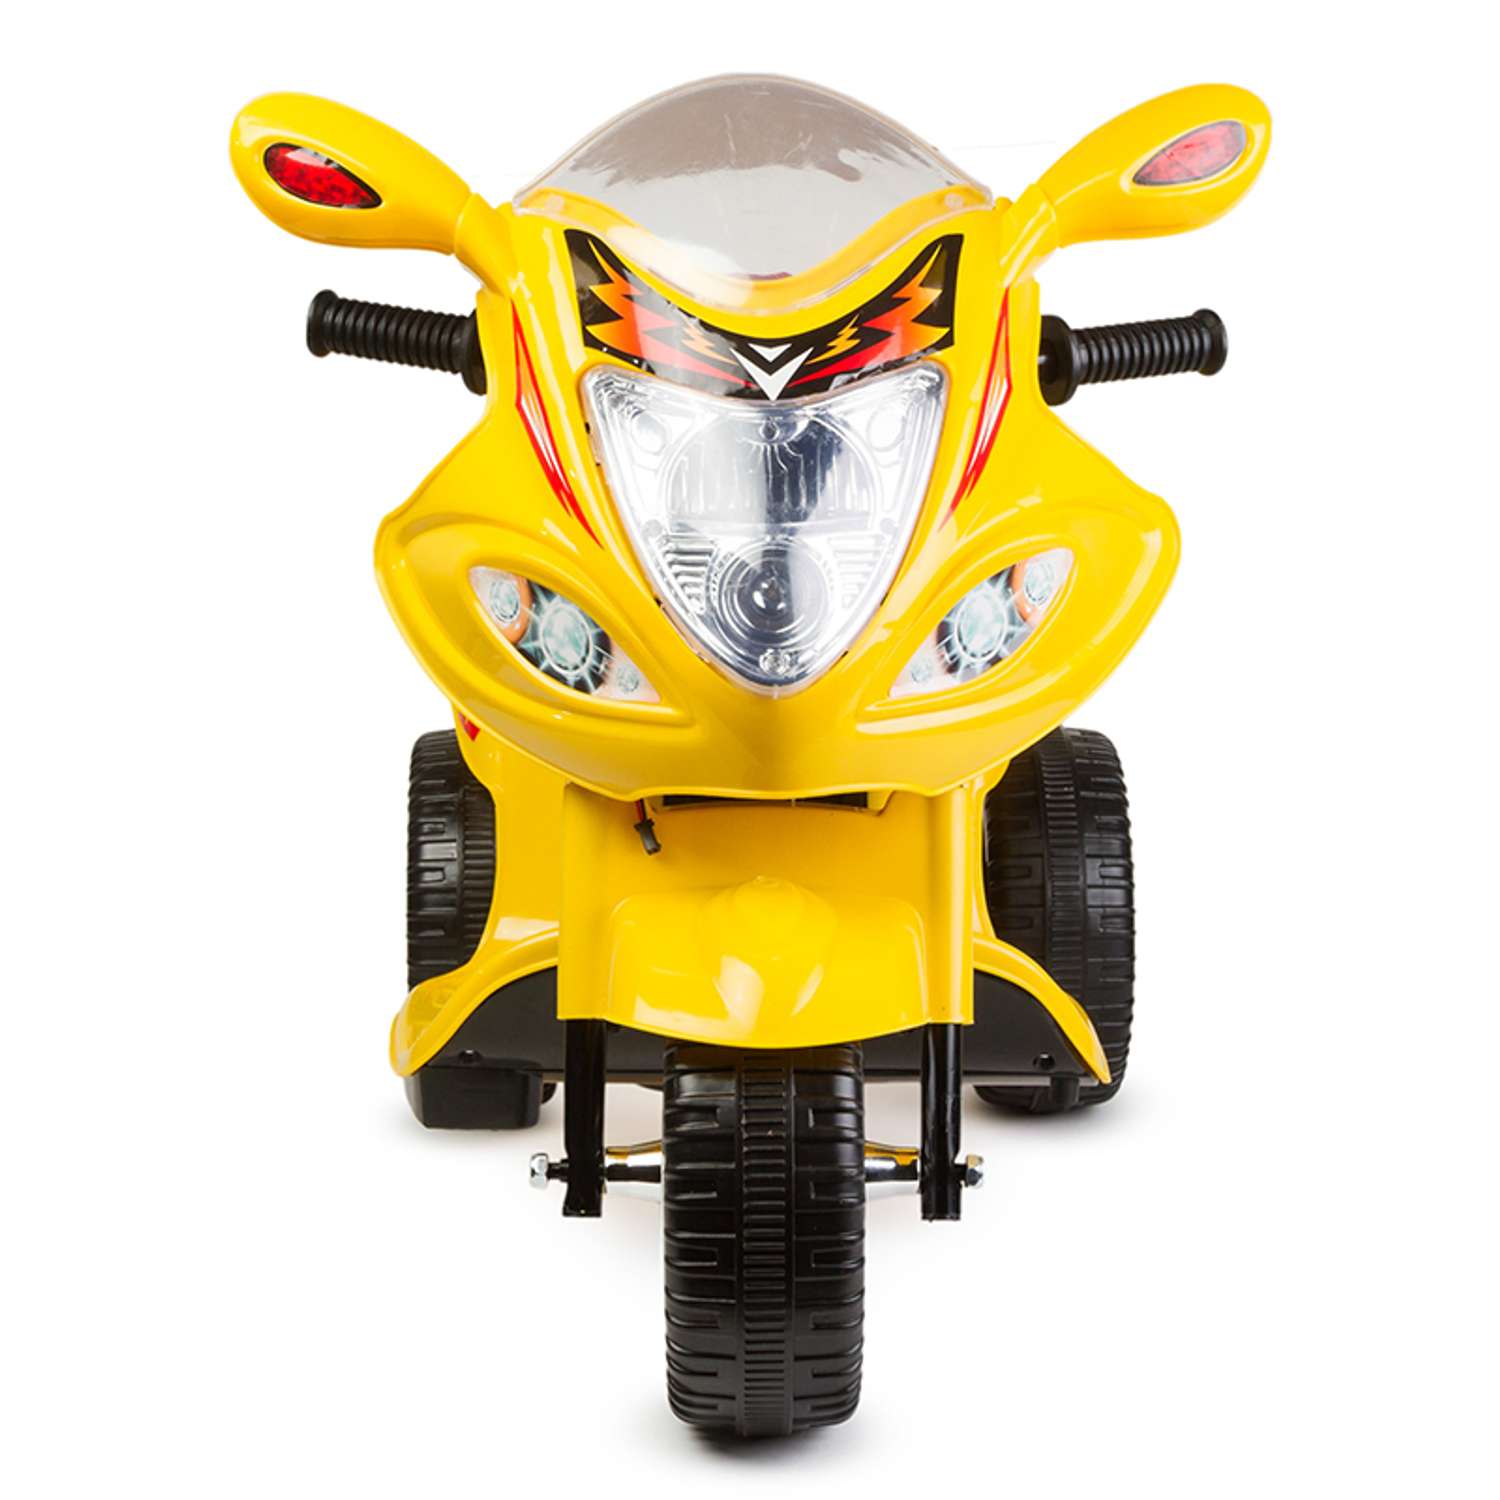 Мотоцикл Kreiss Angry Birds желтый 6V4AH - фото 3